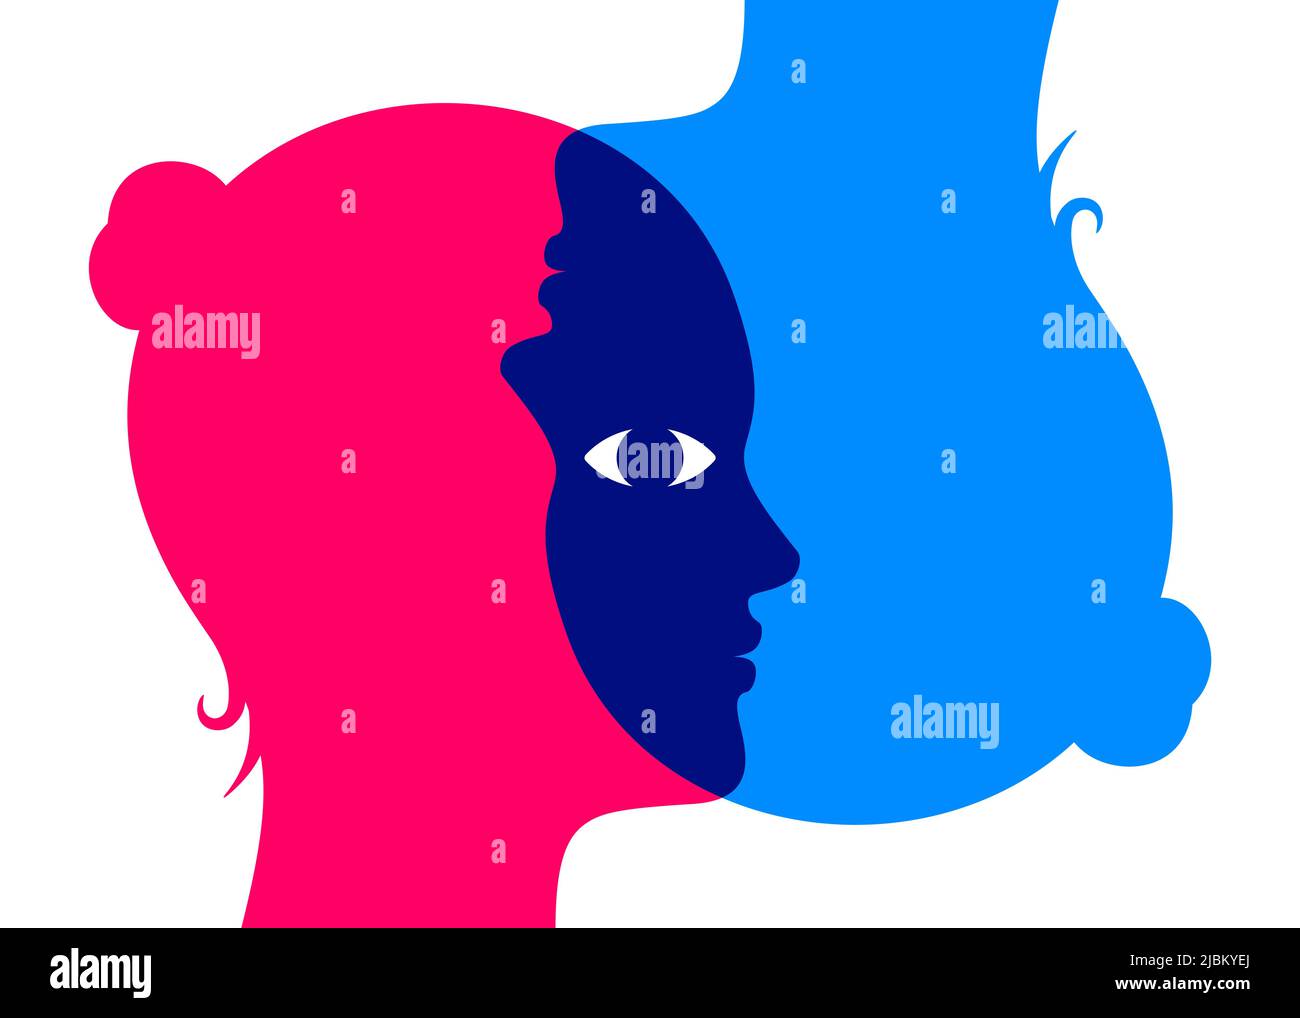 Zwei sich überlappende Frauenköpfe, die sich mit einem gemeinsamen Auge auf den Kopf stellen. Standpunkt, psychologische Konzept Vektor Illustration. Stock Vektor